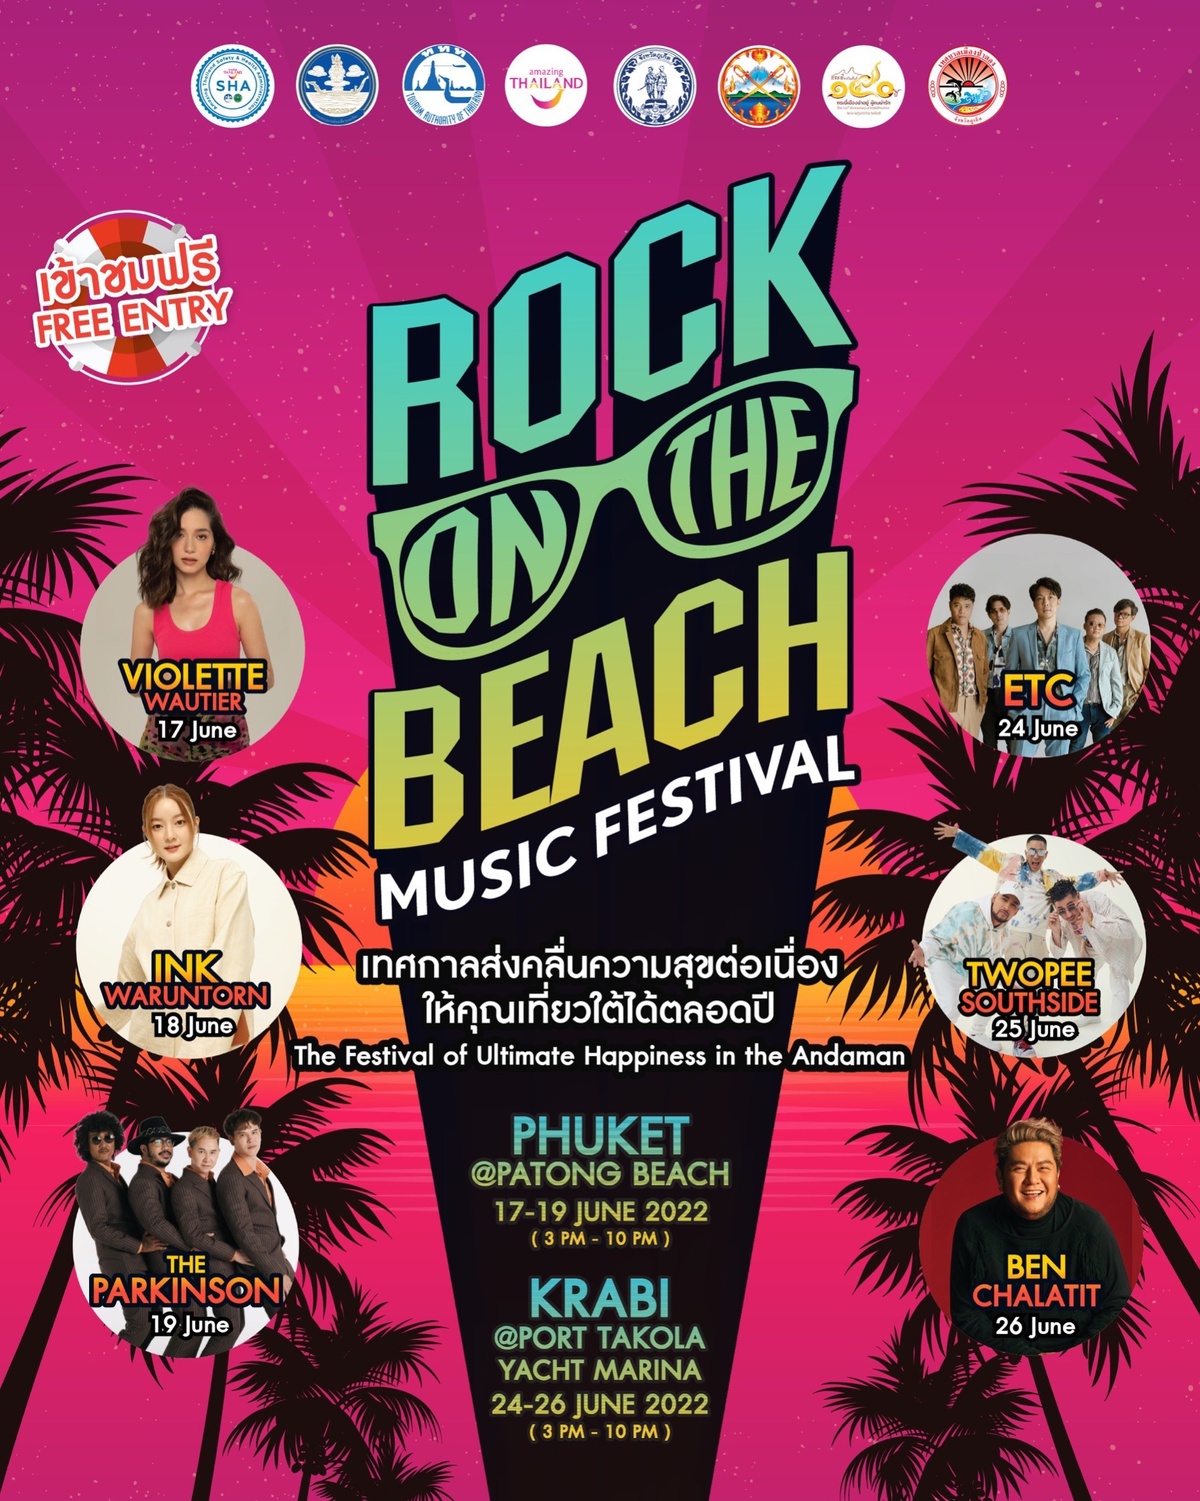 ททท. จัดยิ่งใหญ่ มหกรรมดนตรีบนชายหาด ROCK ON THE BEACH MUSIC FESTIVAL เทศกาลส่งคลื่นความสุขต่อเนื่อง ให้คุณเที่ยวใต้ได้ตลอดปี กระตุ้นเศรษฐกิจและการเดินทางท่องเที่ยวในประเทศ